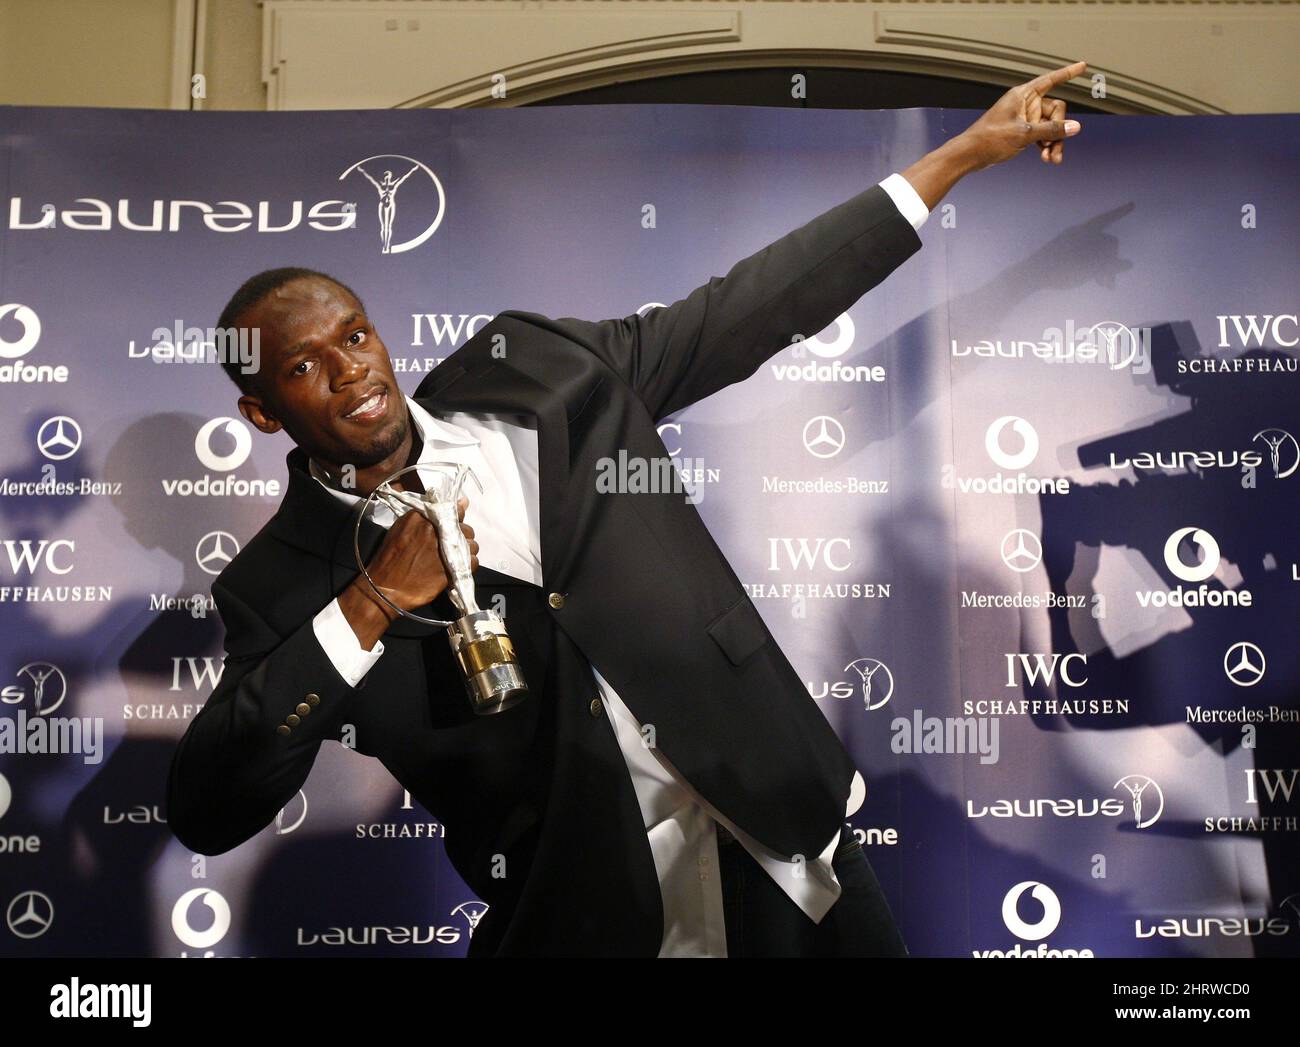 Medaglia d'oro olimpica Usain Bolt. Della Giamaica, pone per una fotografia a Toronto dopo aver vinto il premio 2009 Laureus World Sportsman of the Year Award mercoledì 10 giugno 2009. (AP Photo/The Canadian Press, Nathan Denette) Foto Stock